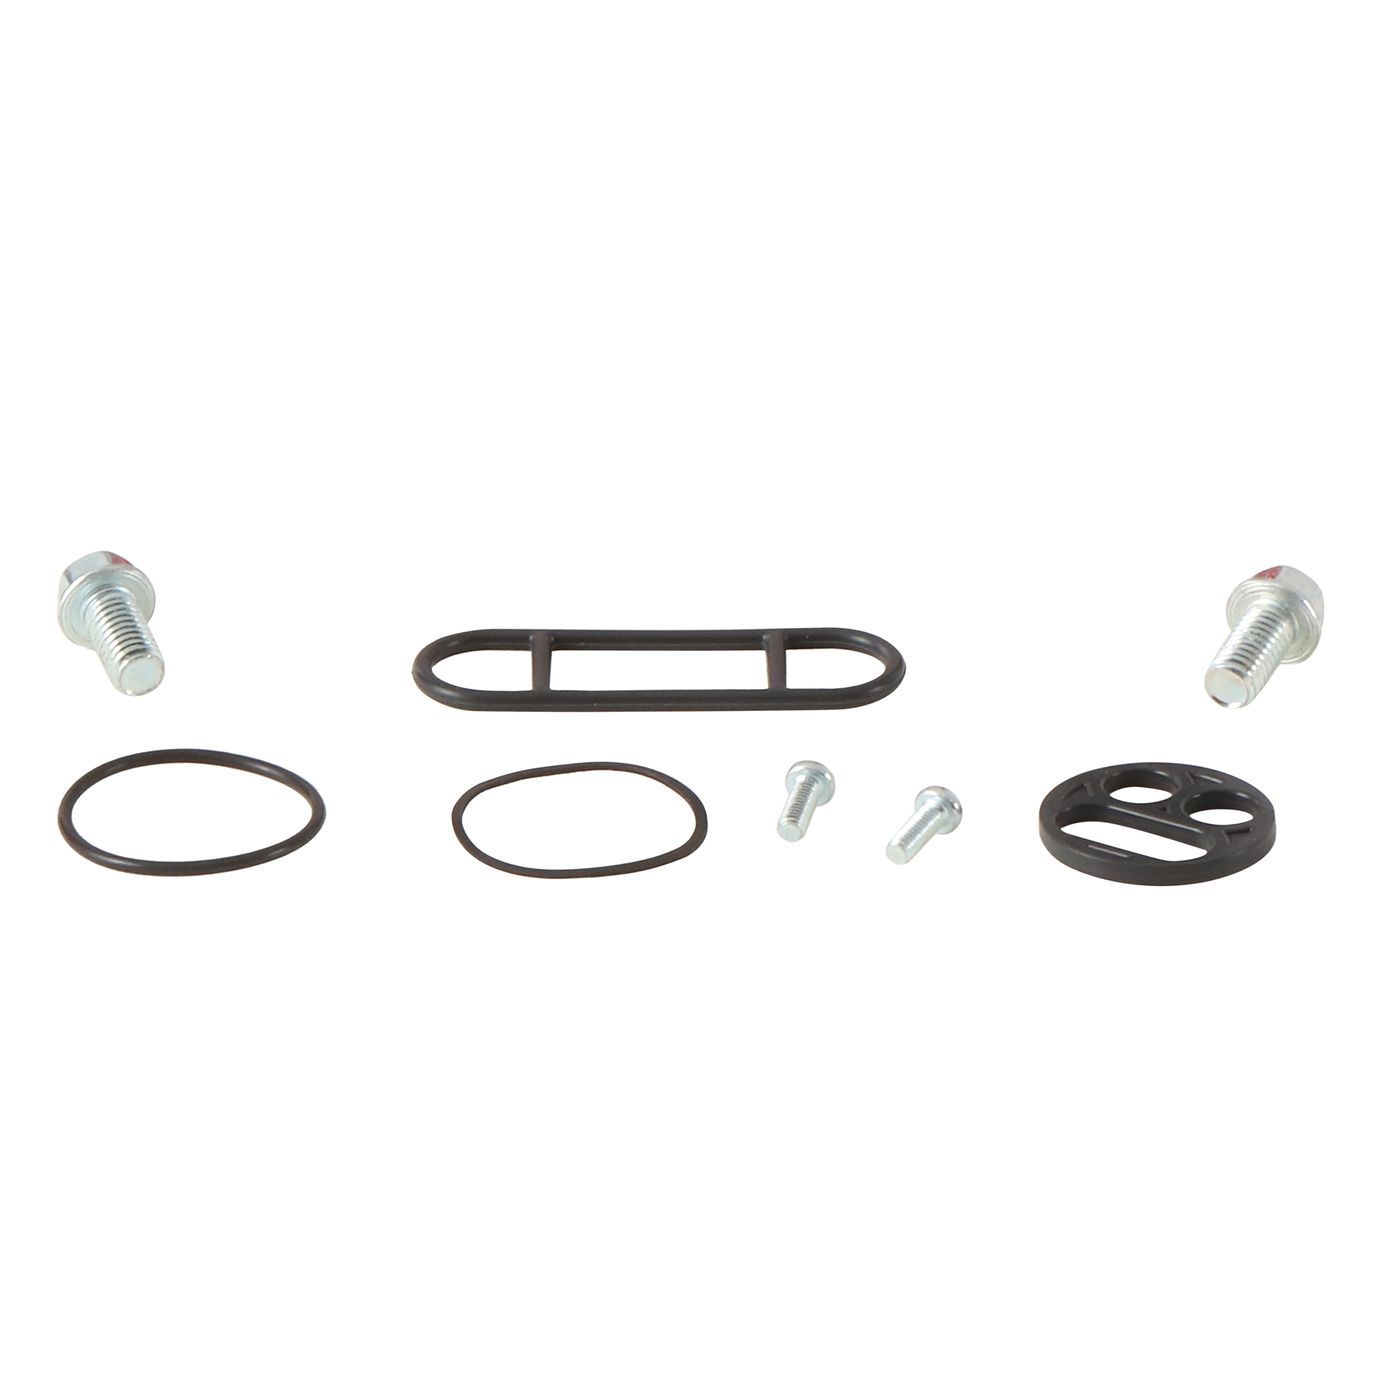 Wrp Fuel Tap Repair Kits - WRP601091 image